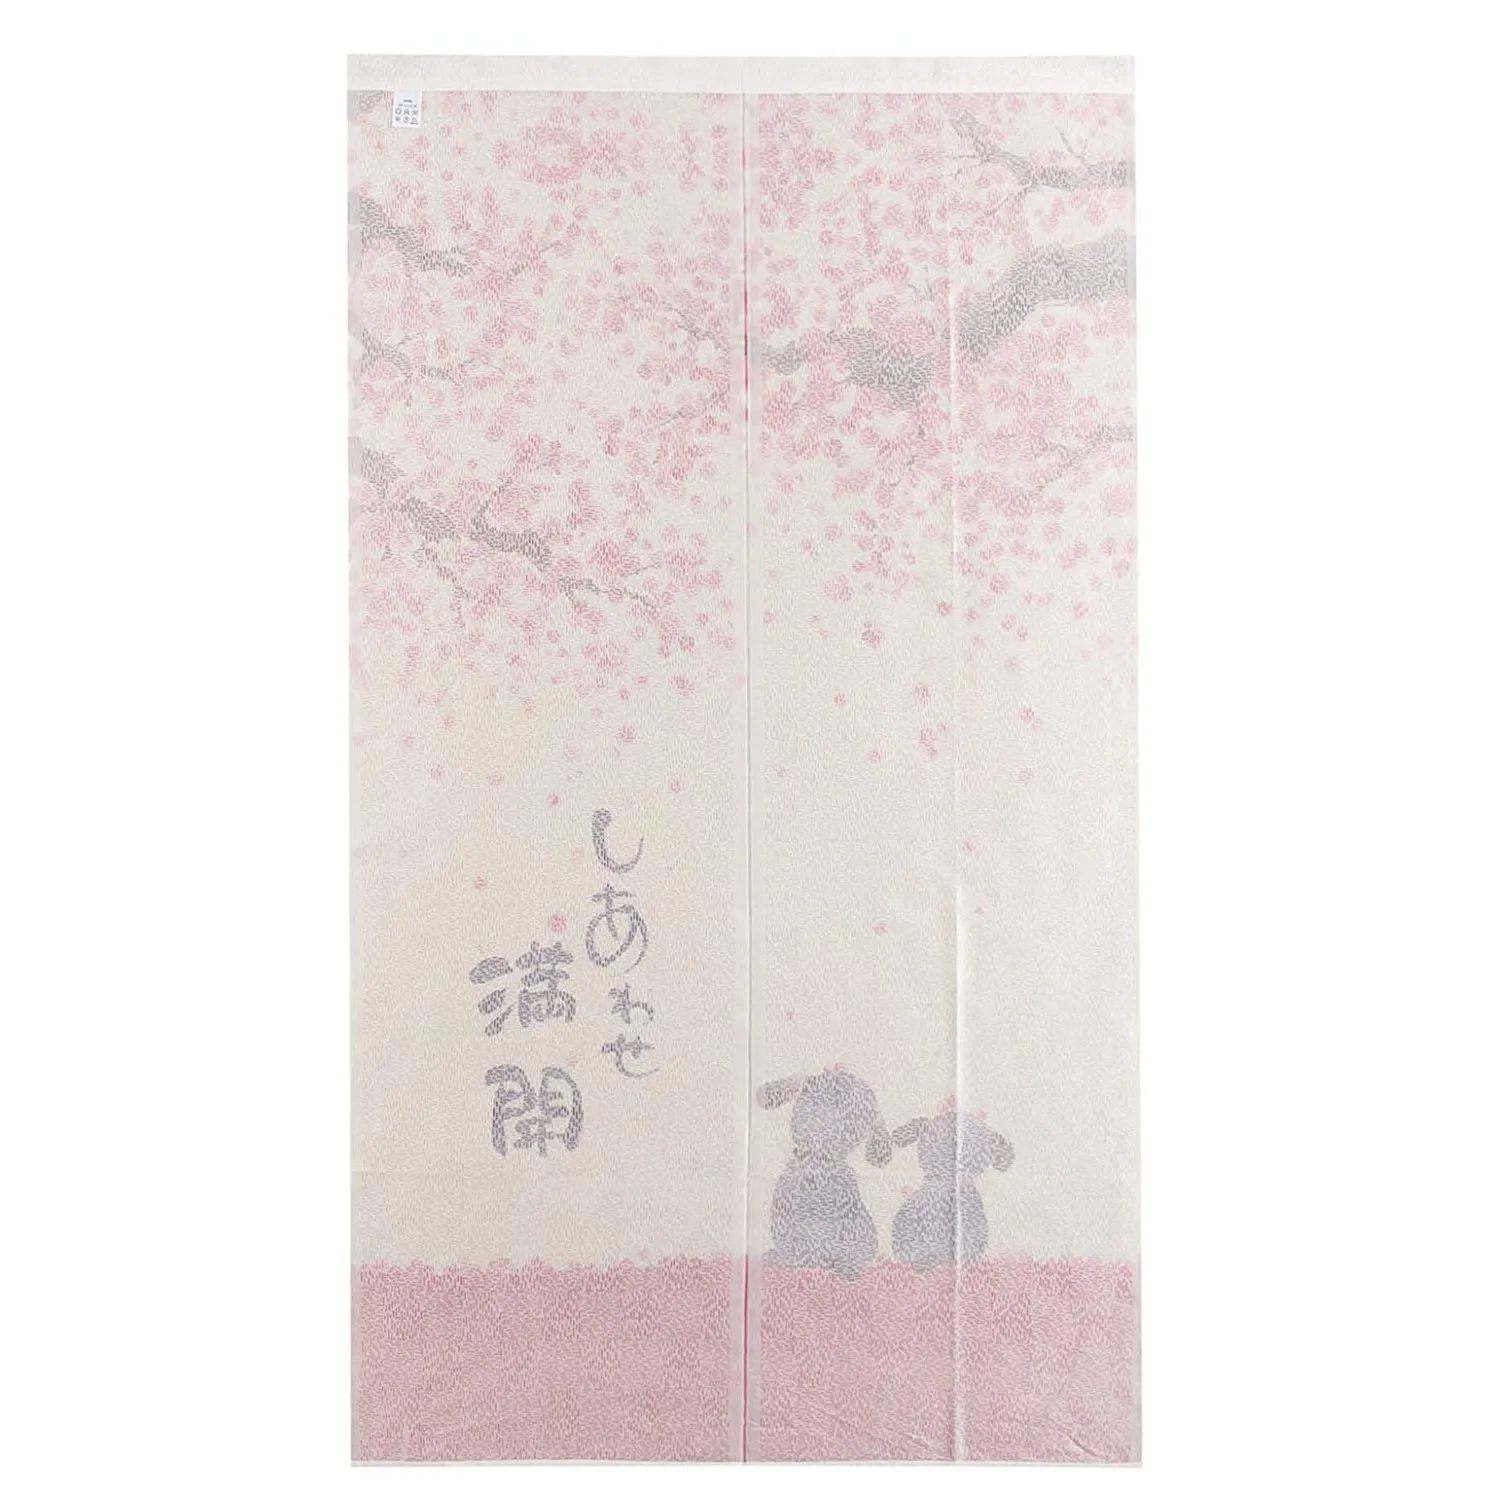 Горячие японский стиль дверной занавес 85X150 см Happy Dogs Cherry Blossom